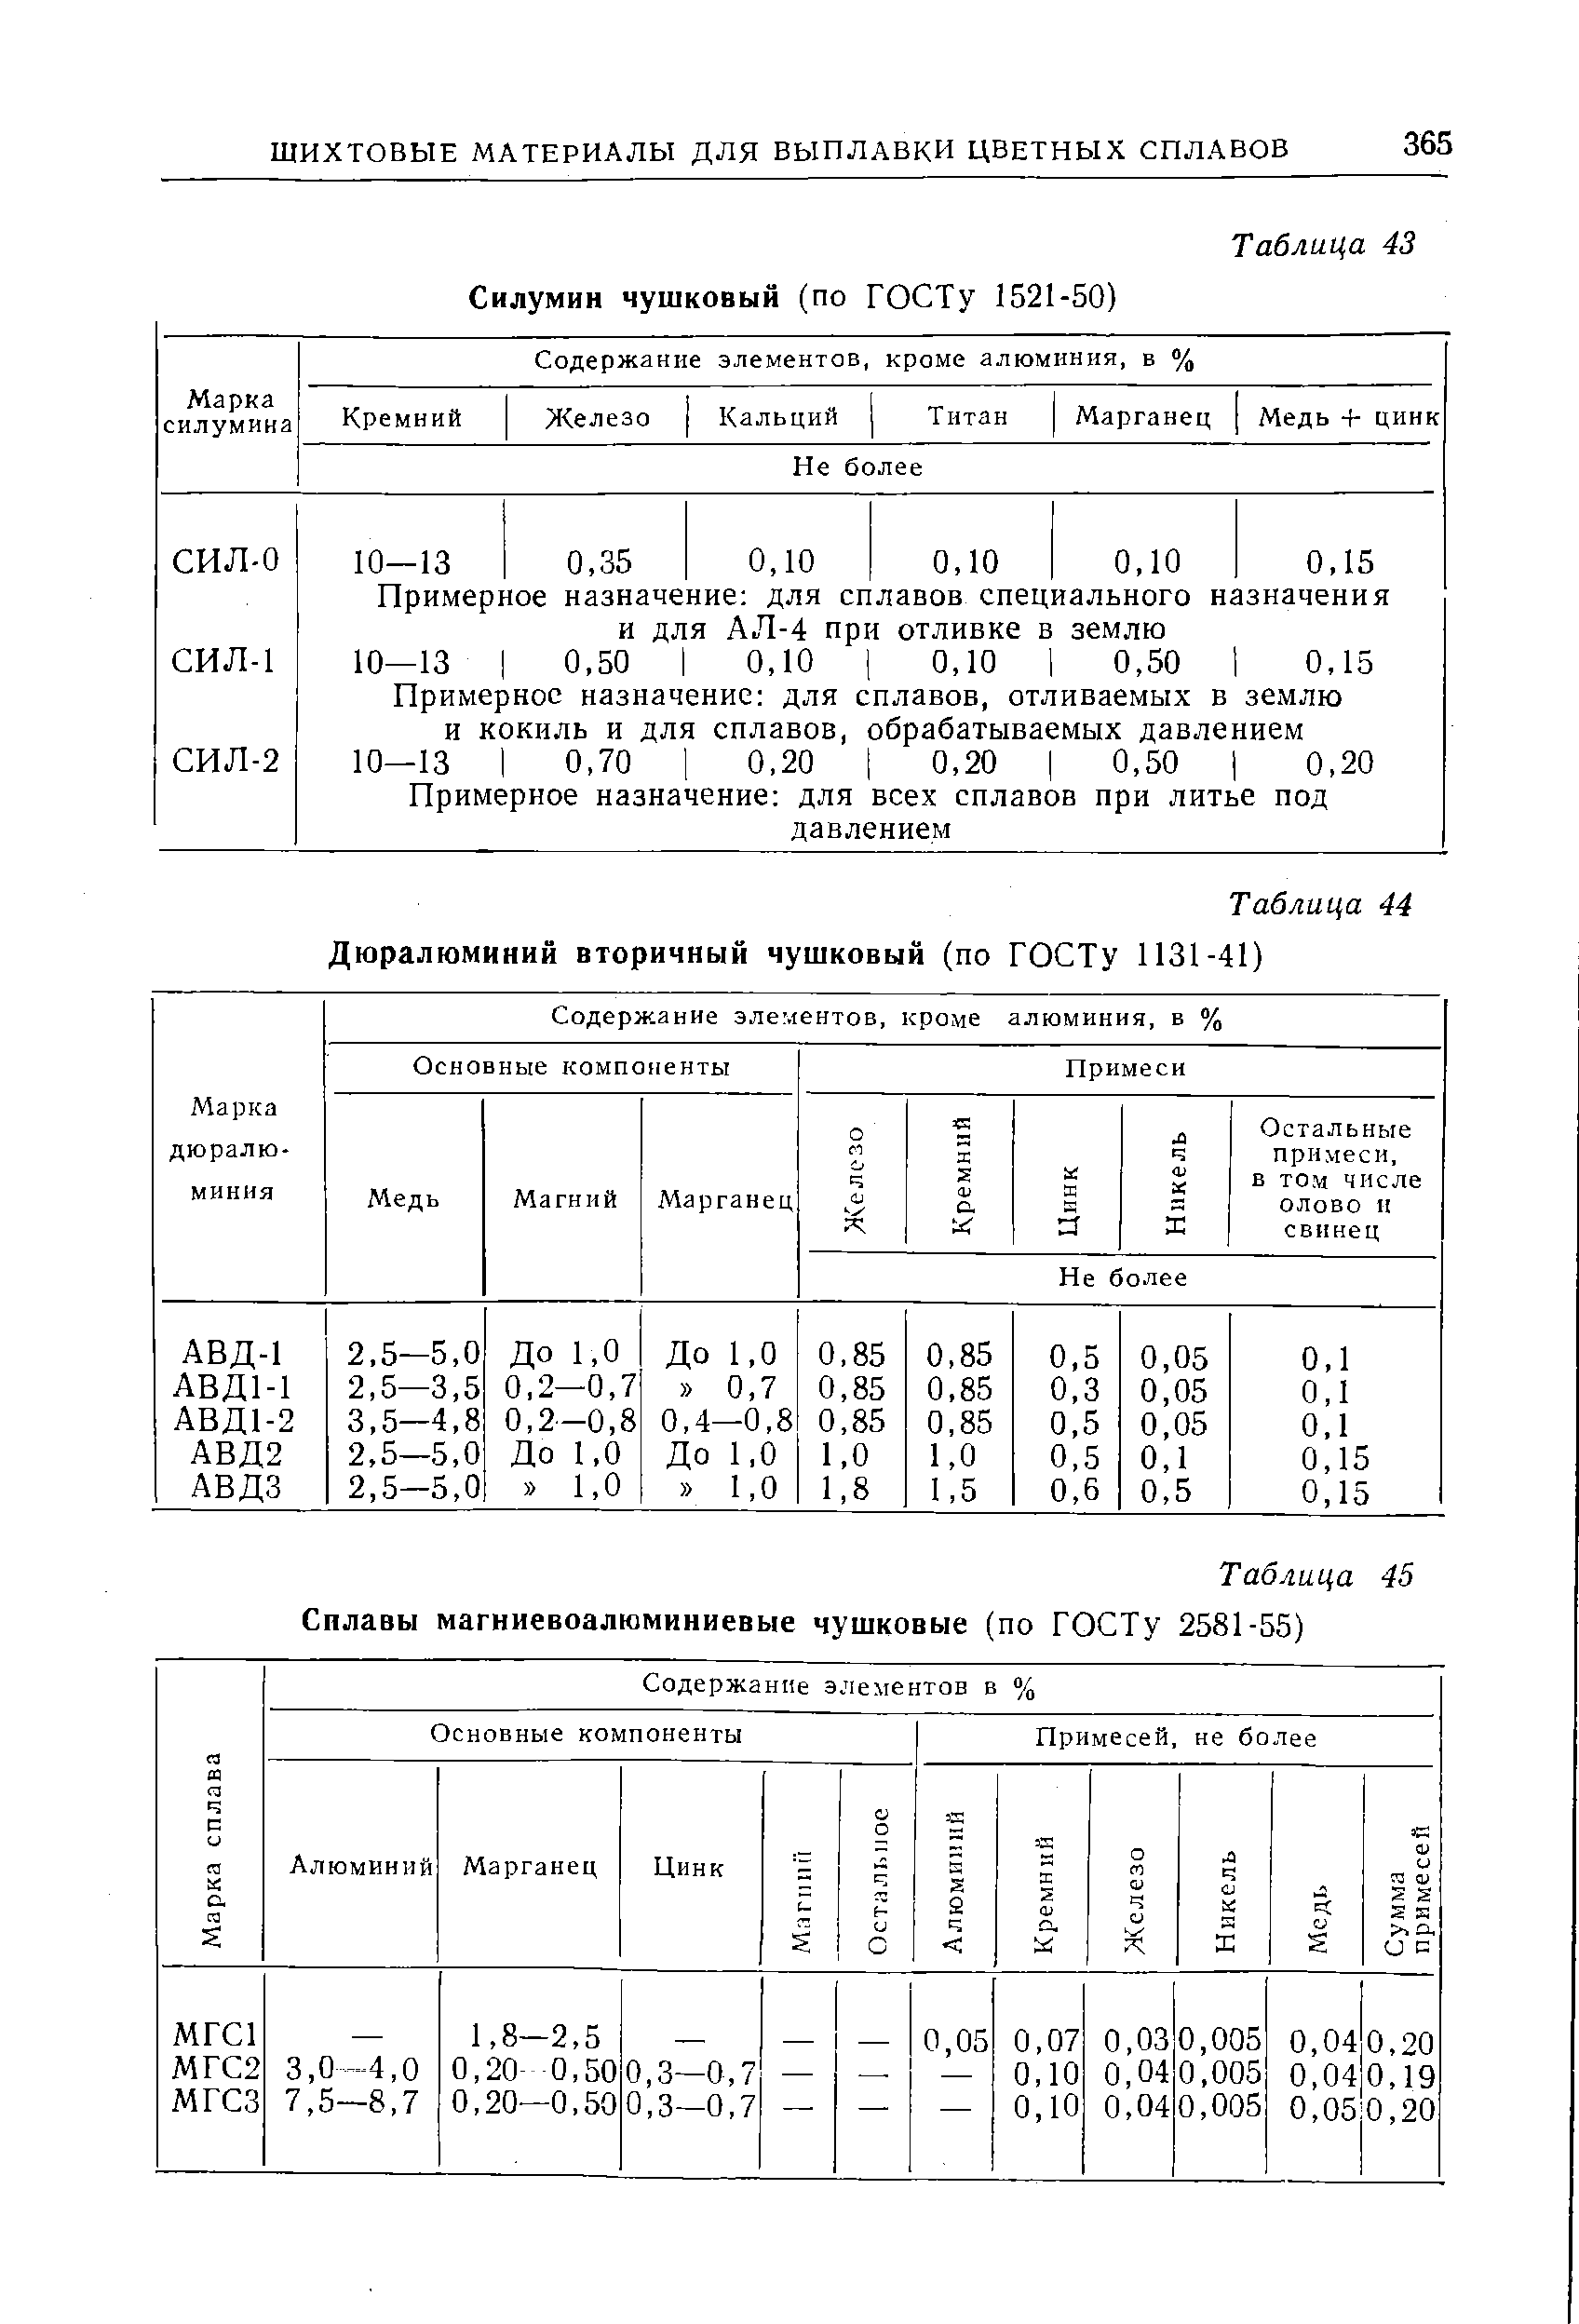 Таблица 44 Дюралюминий вторичный чушковый (по ГОСТу 1131-41)
